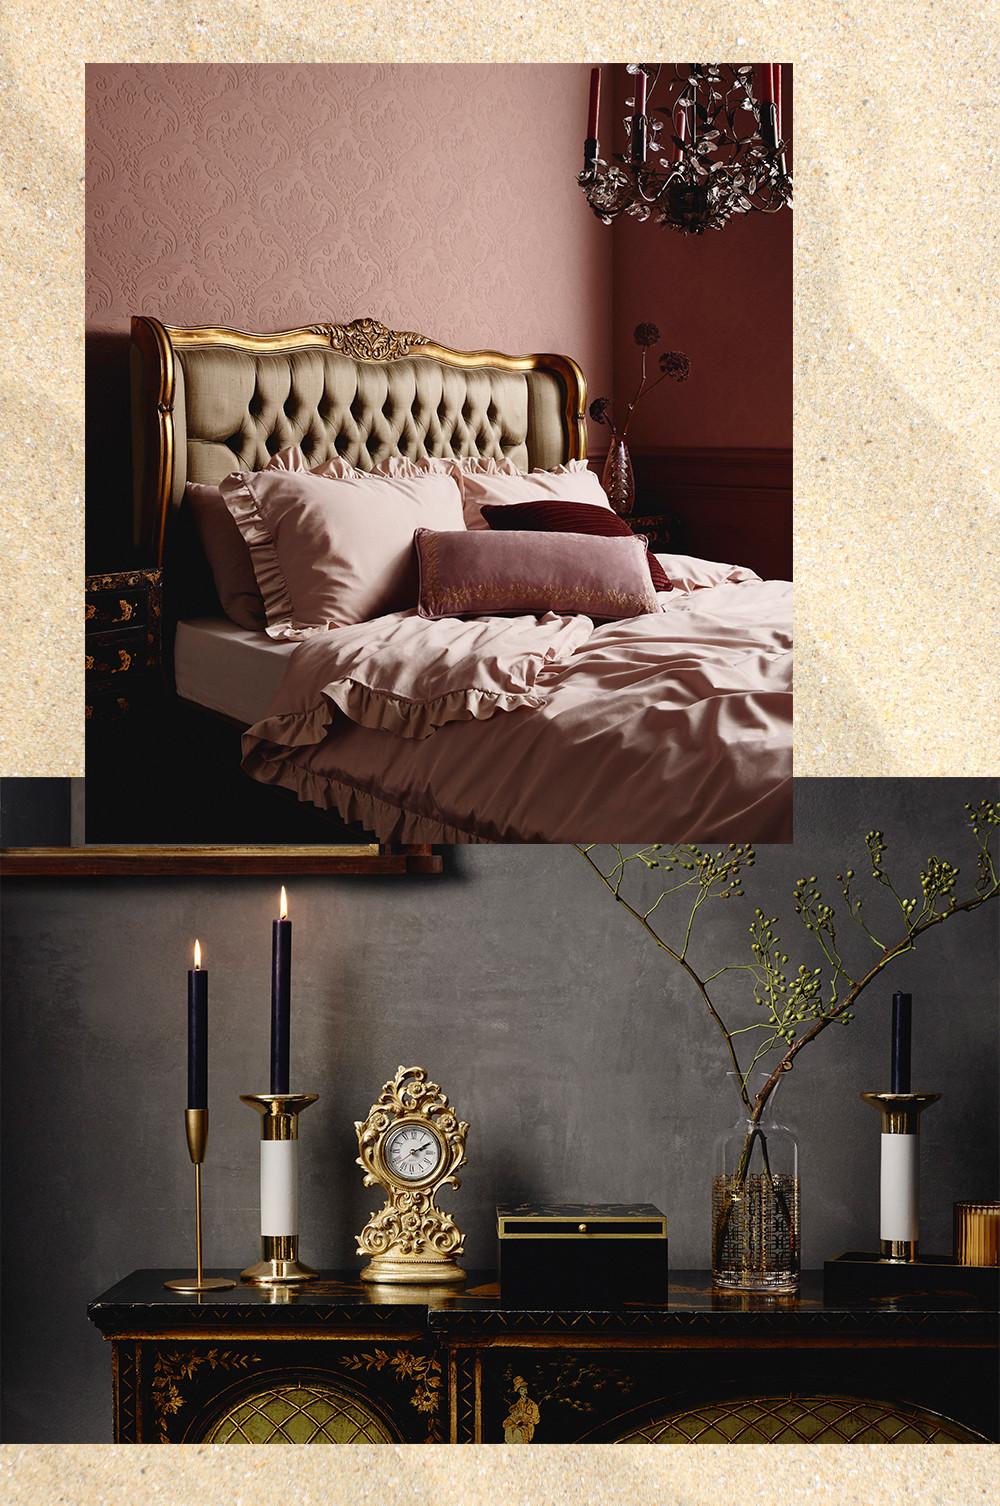 Dormitorio de lujo, ropa de cama rosa, velas y accesorios dorados